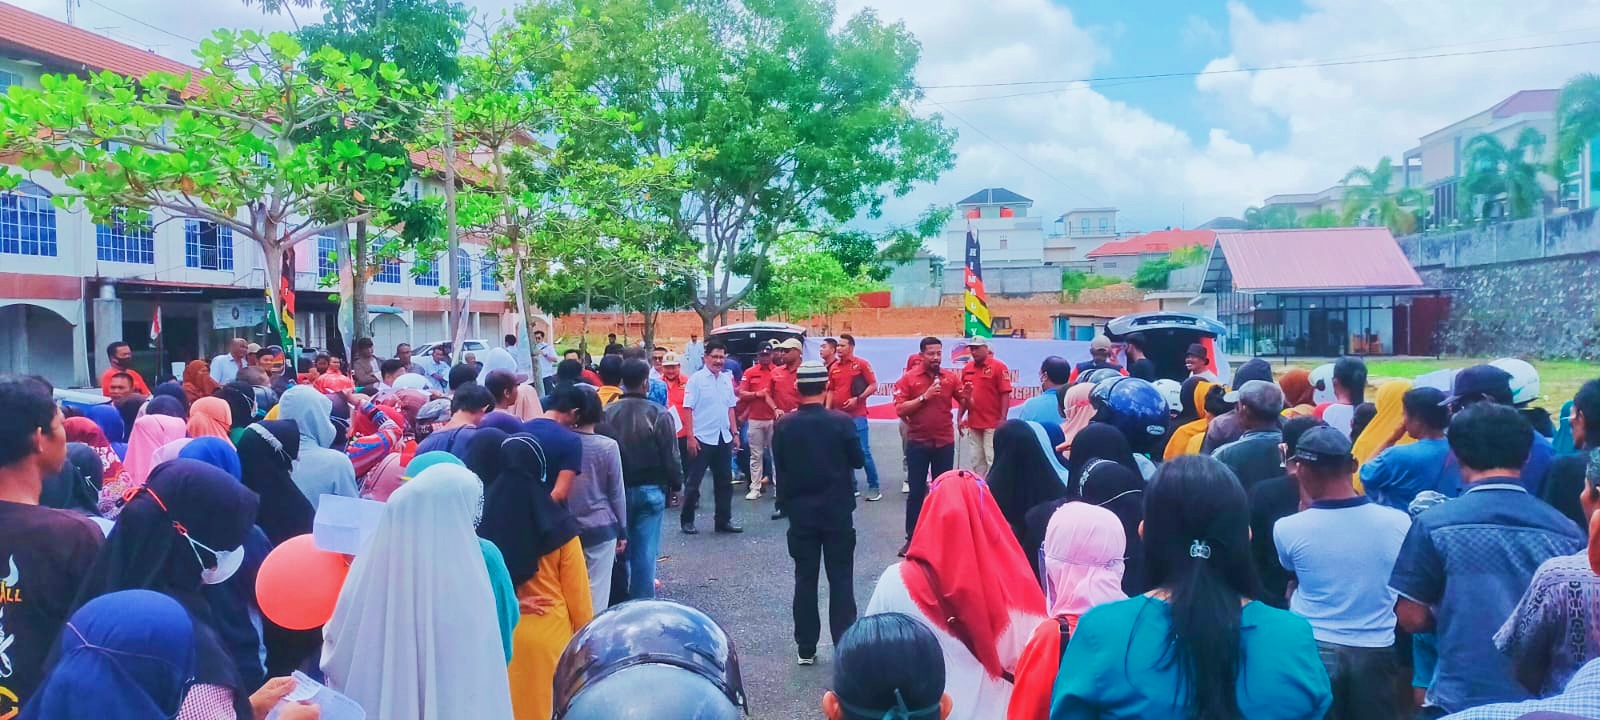 Perhimpunan Melayu Raya saat membagikan beras kemerdekaan di JL. DI Panjaitan, Tanjungpinang, Rabu (17/8/2022). 